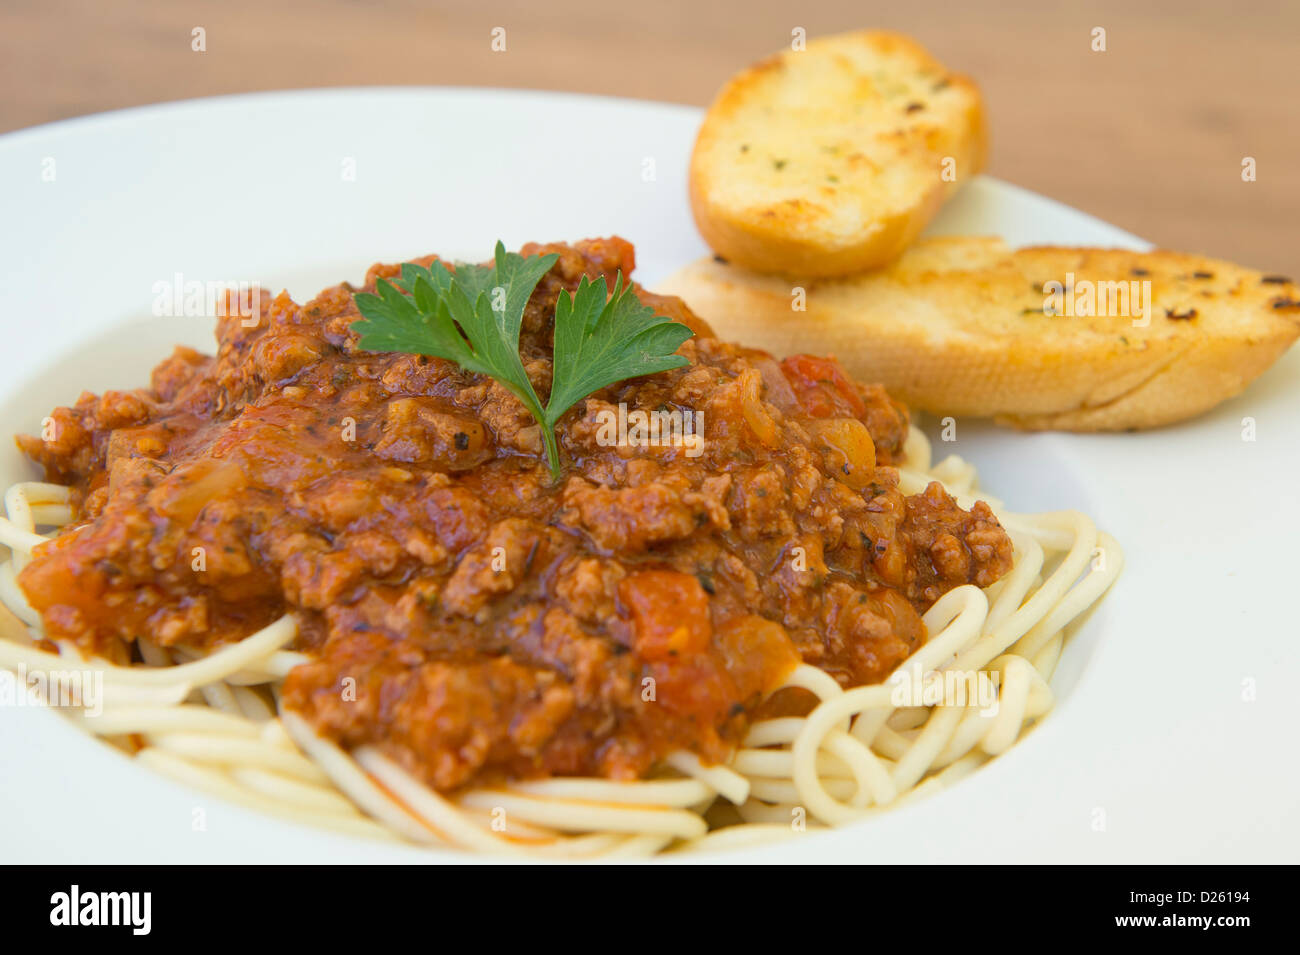 Gustosa cercando spaghetti bolognese servita con pane all'aglio. Foto Stock